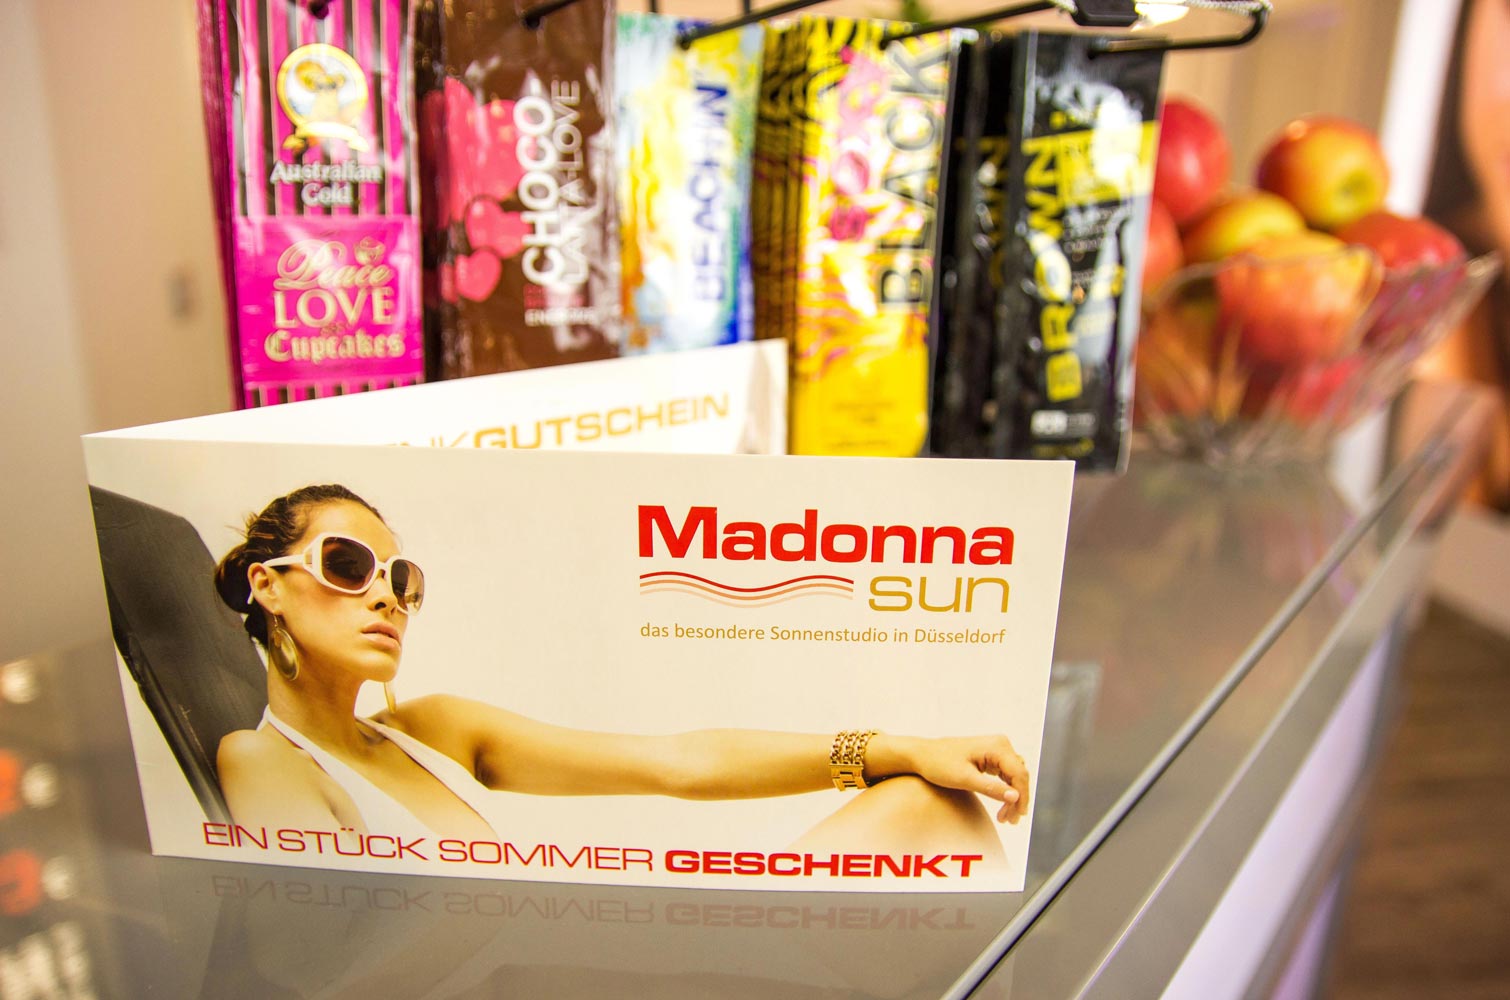 Bild 10 alpha industrie GmbH & Co. KG Madonna Sun in Düsseldorf